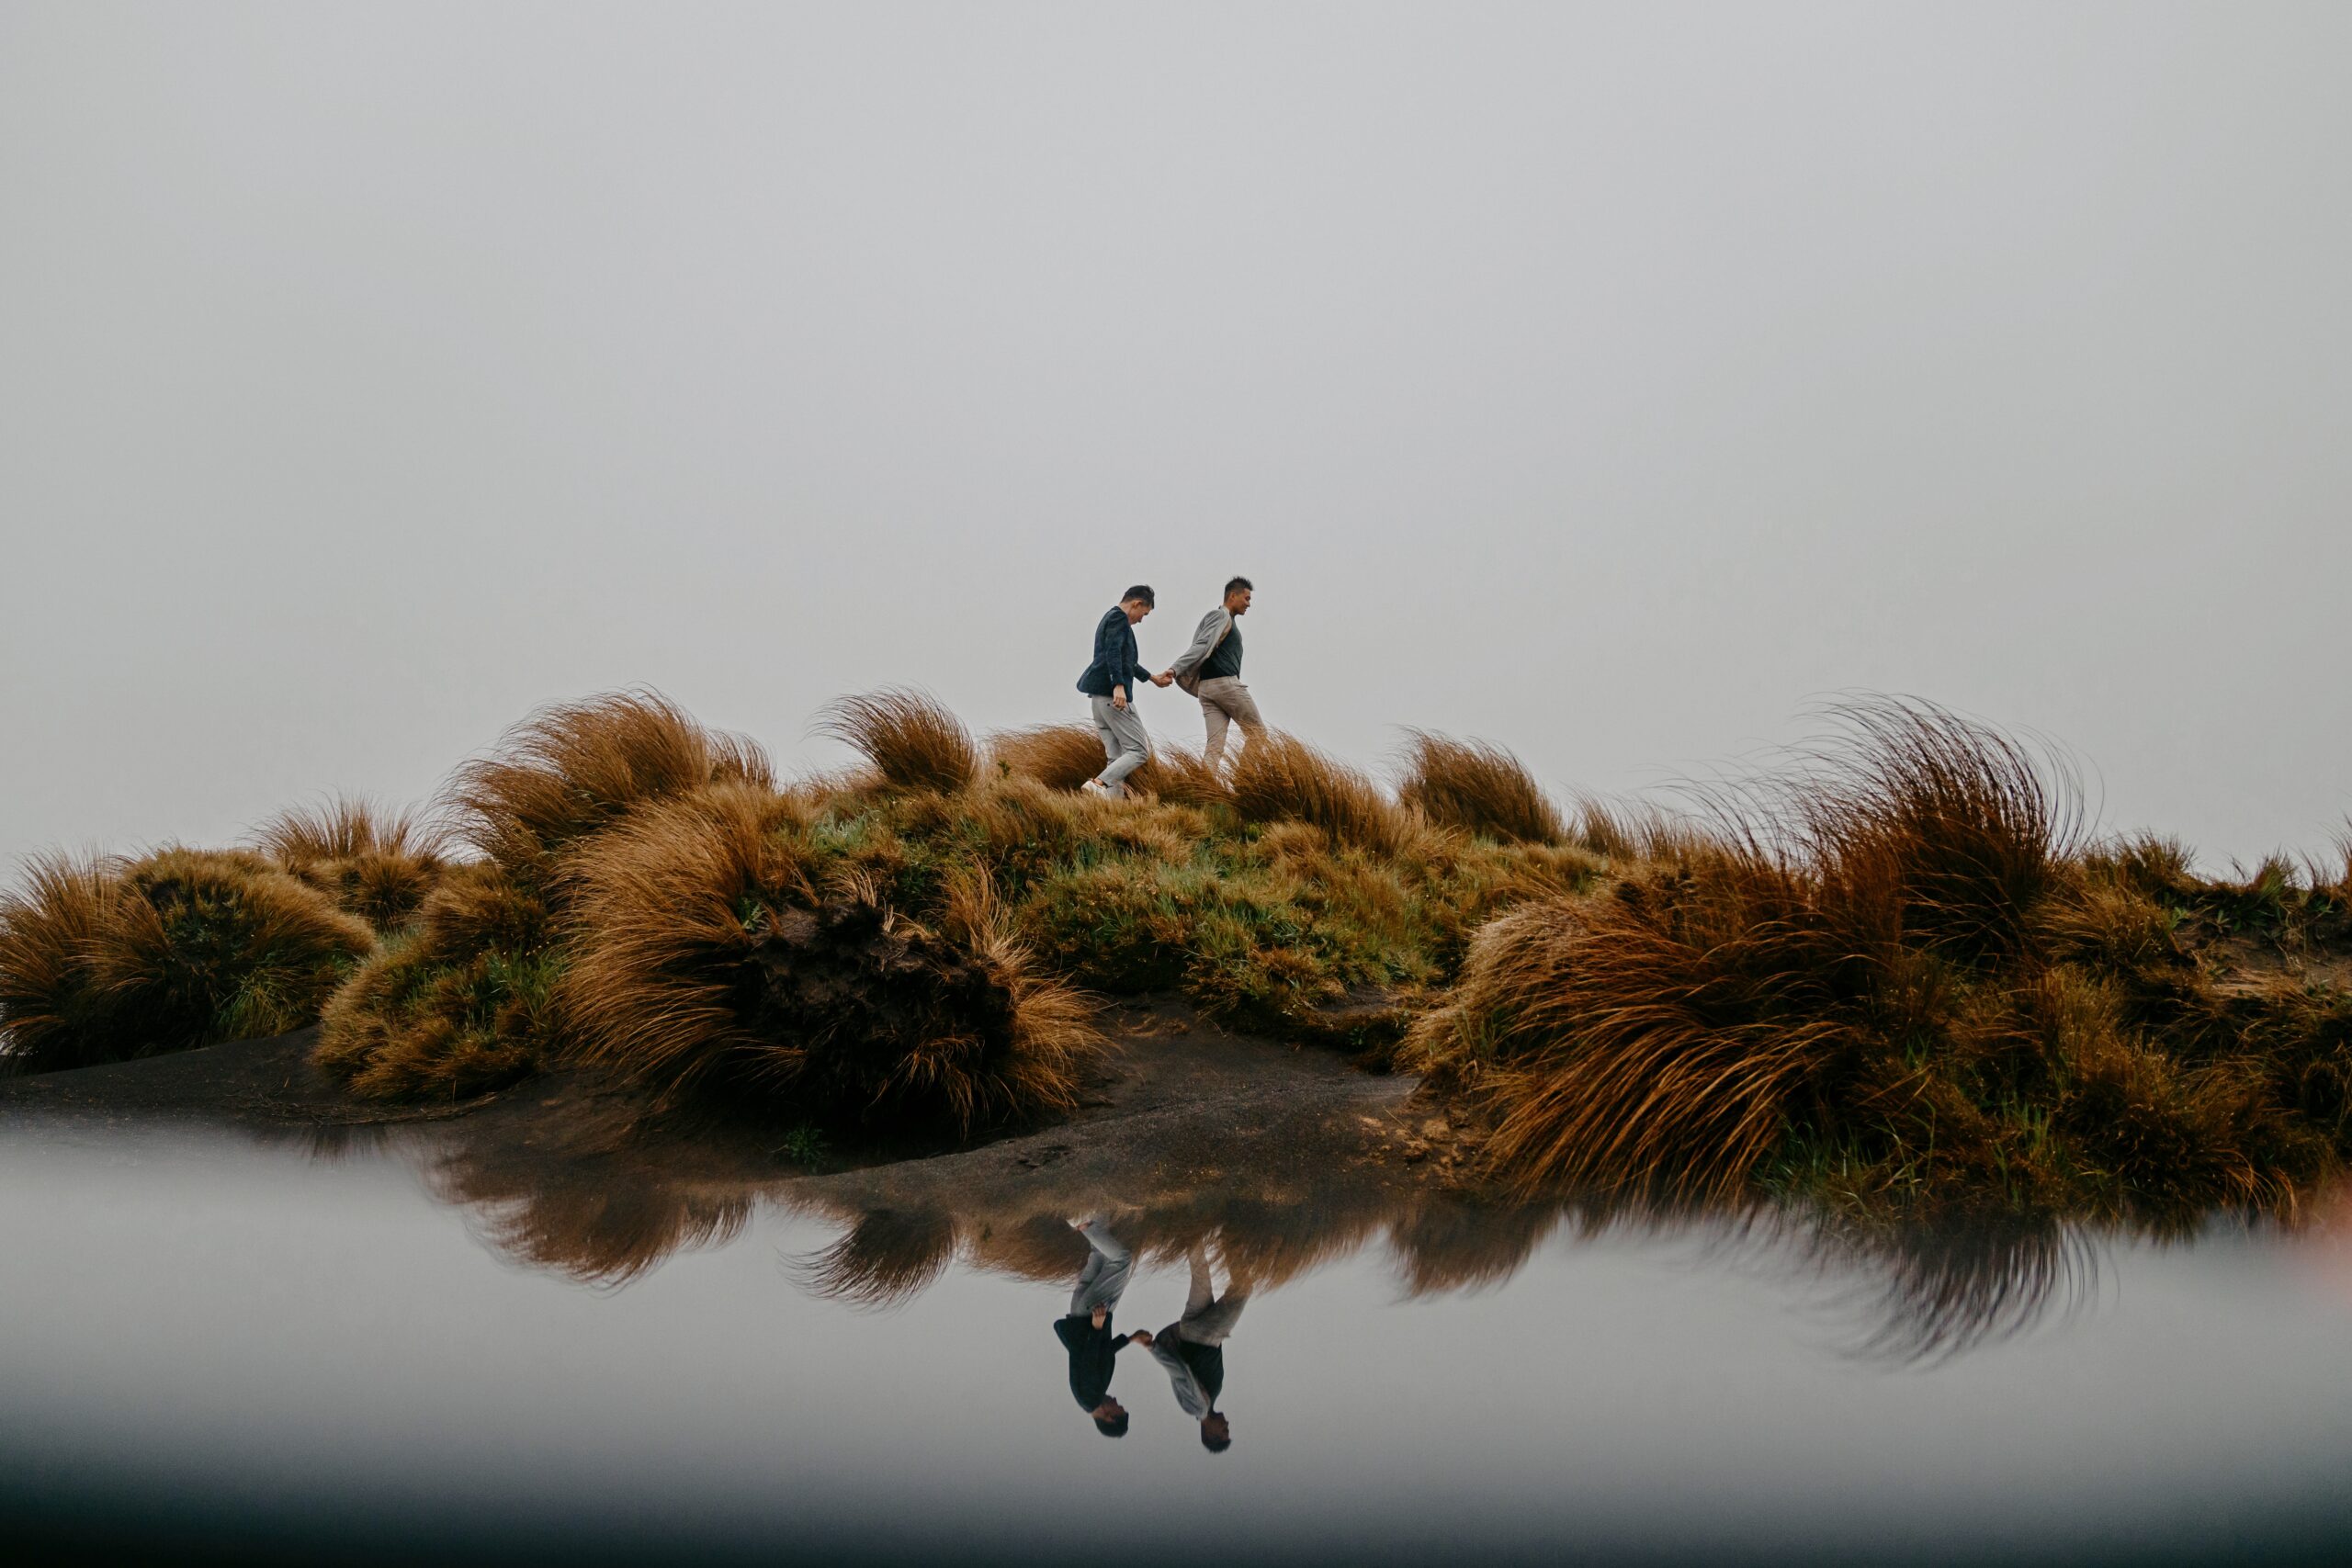 Rainy day prewedding photoshoot in Tongariro National Park, New Zealand